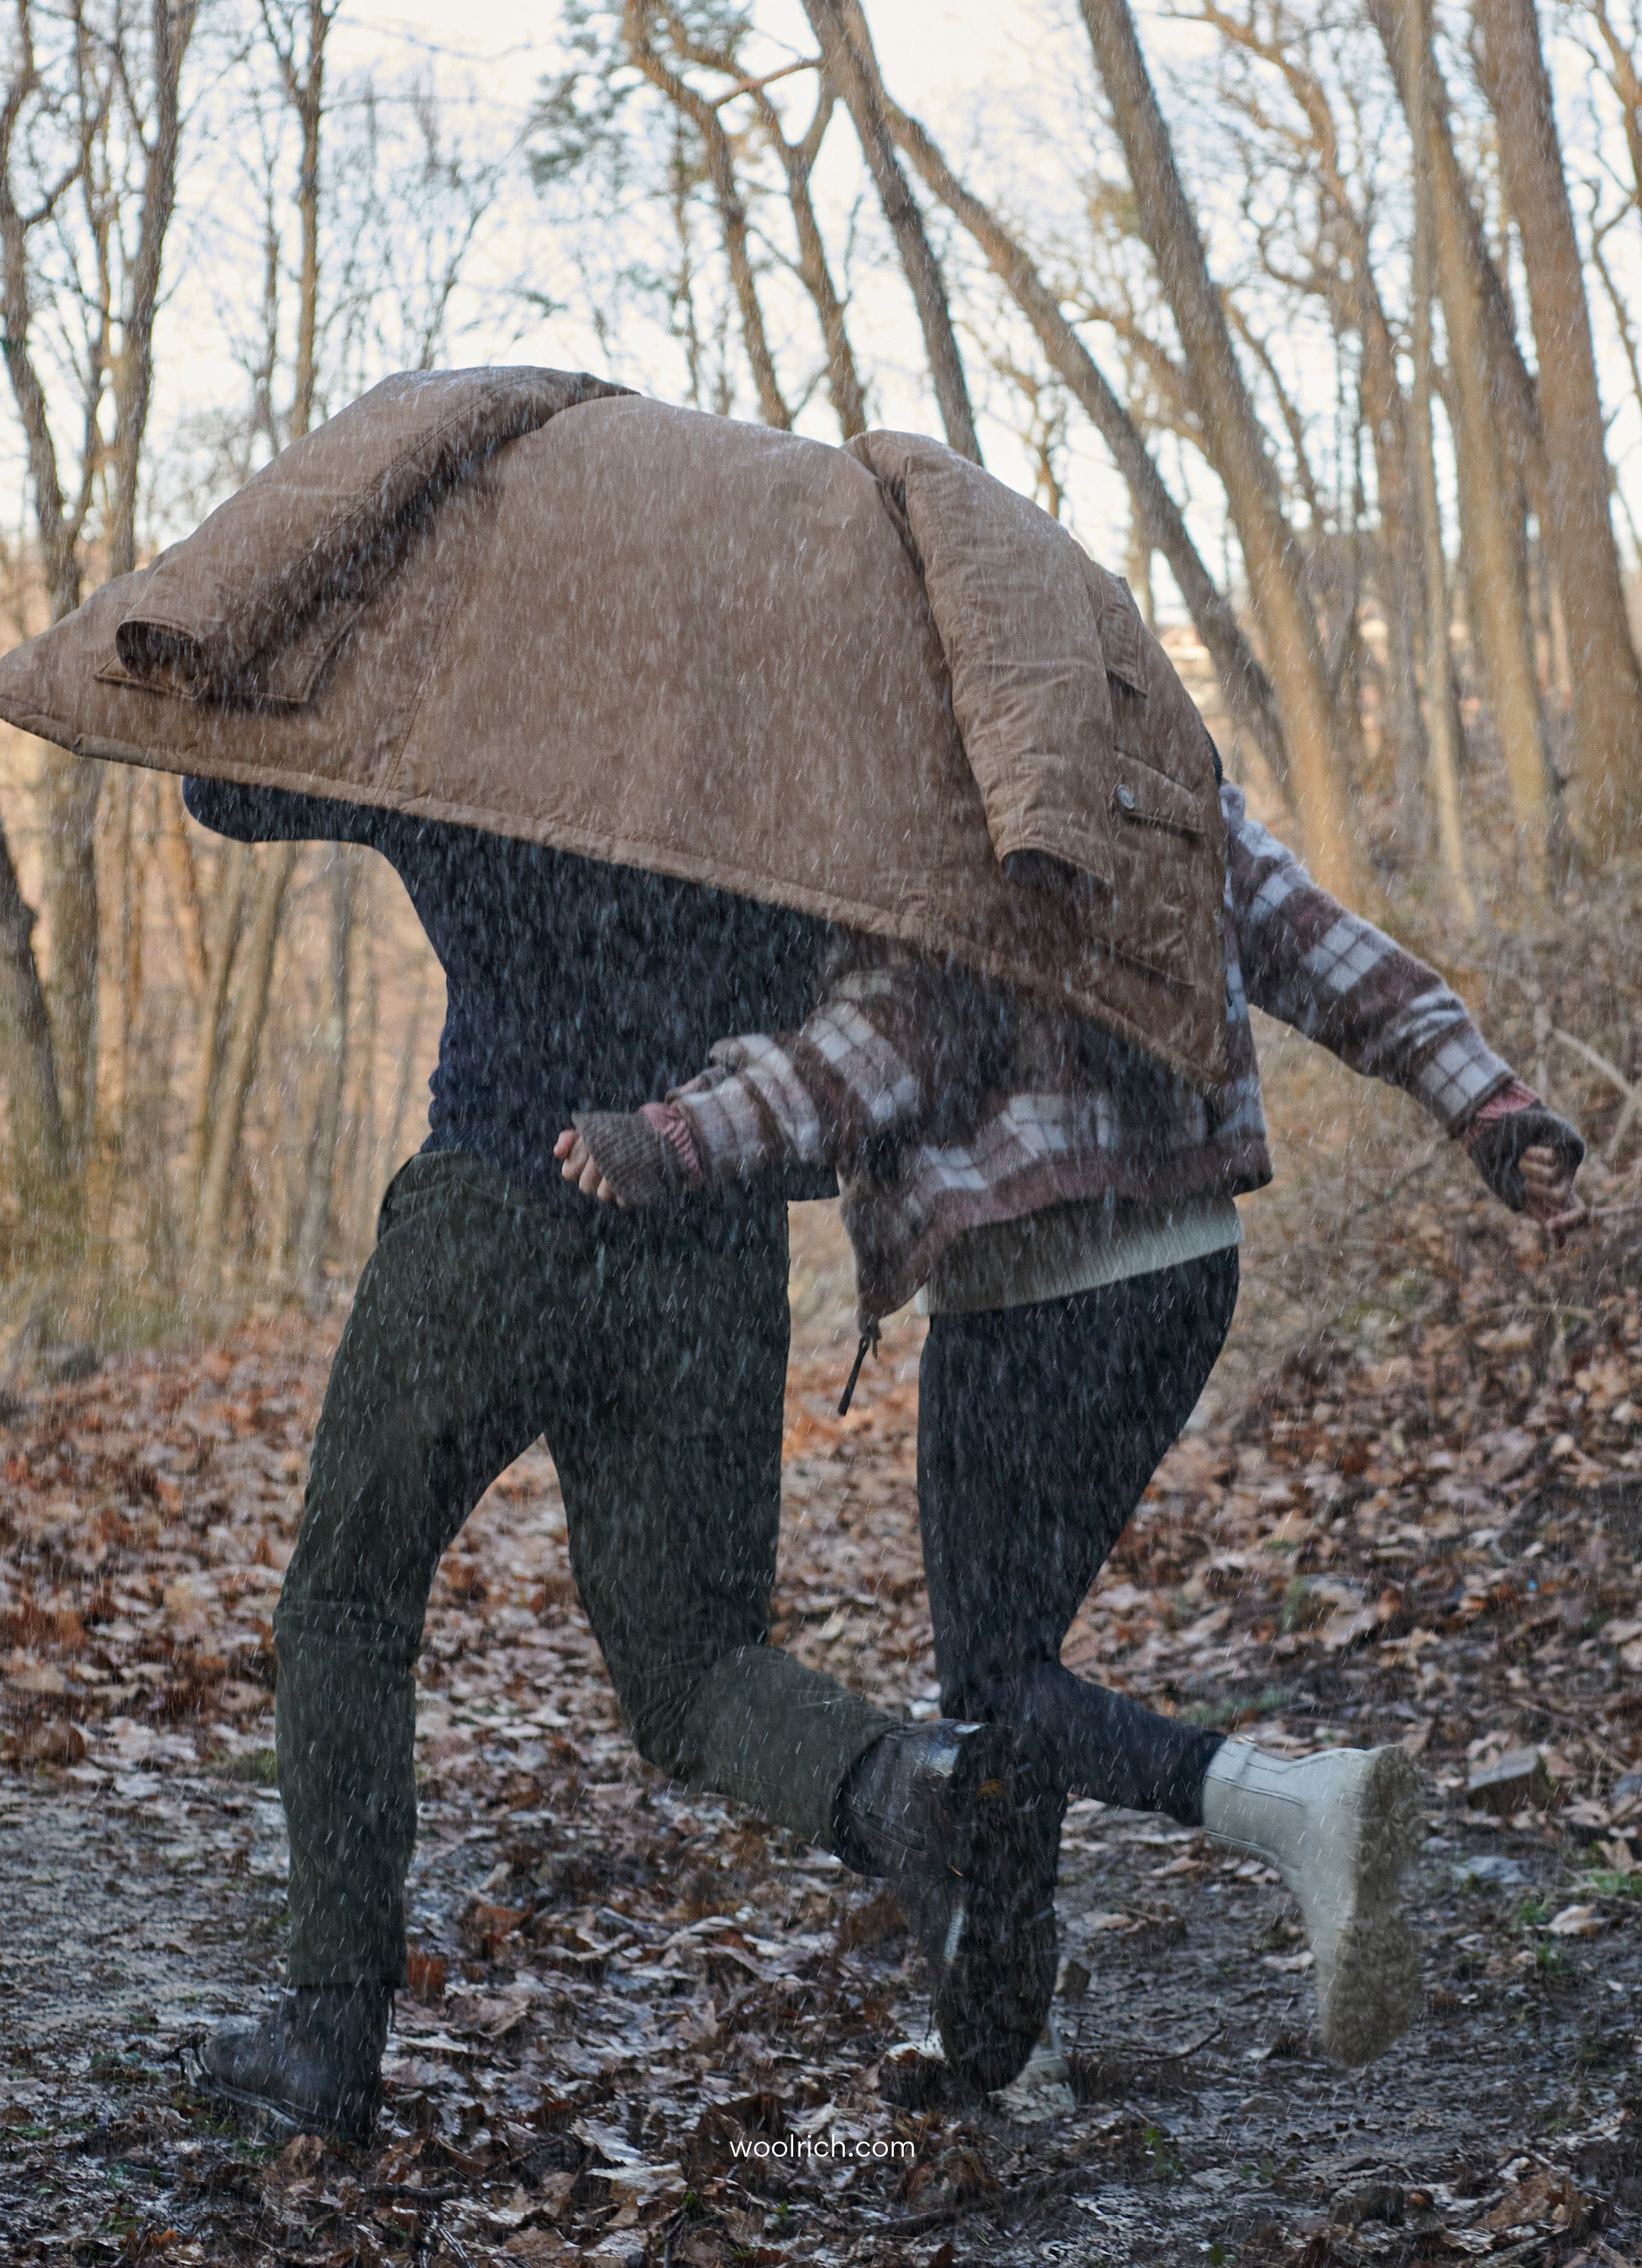 Woolrich посвятил новую кампанию прогулкам при любых погодных условиях (фото 3)